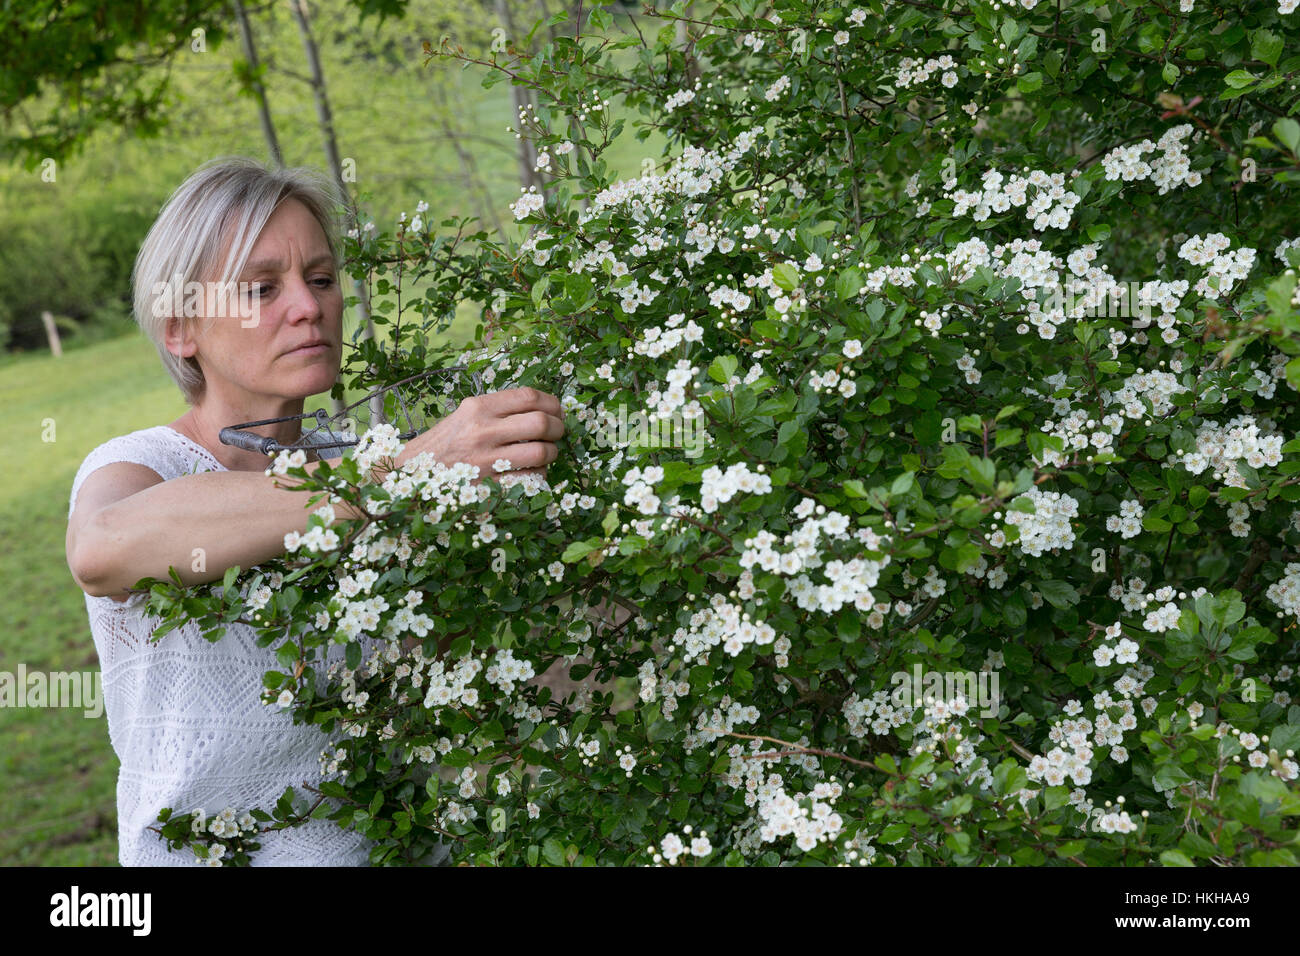 Weißdornblüten-Ernte, Blüten von Weißdorn sammeln, ernten, pfücken, Weißdorn-Eingriffliger Weißdorn, Blüten, Weissdorn, Weiß-Weiss-Dorn Crataeg, Dorn, Banque D'Images